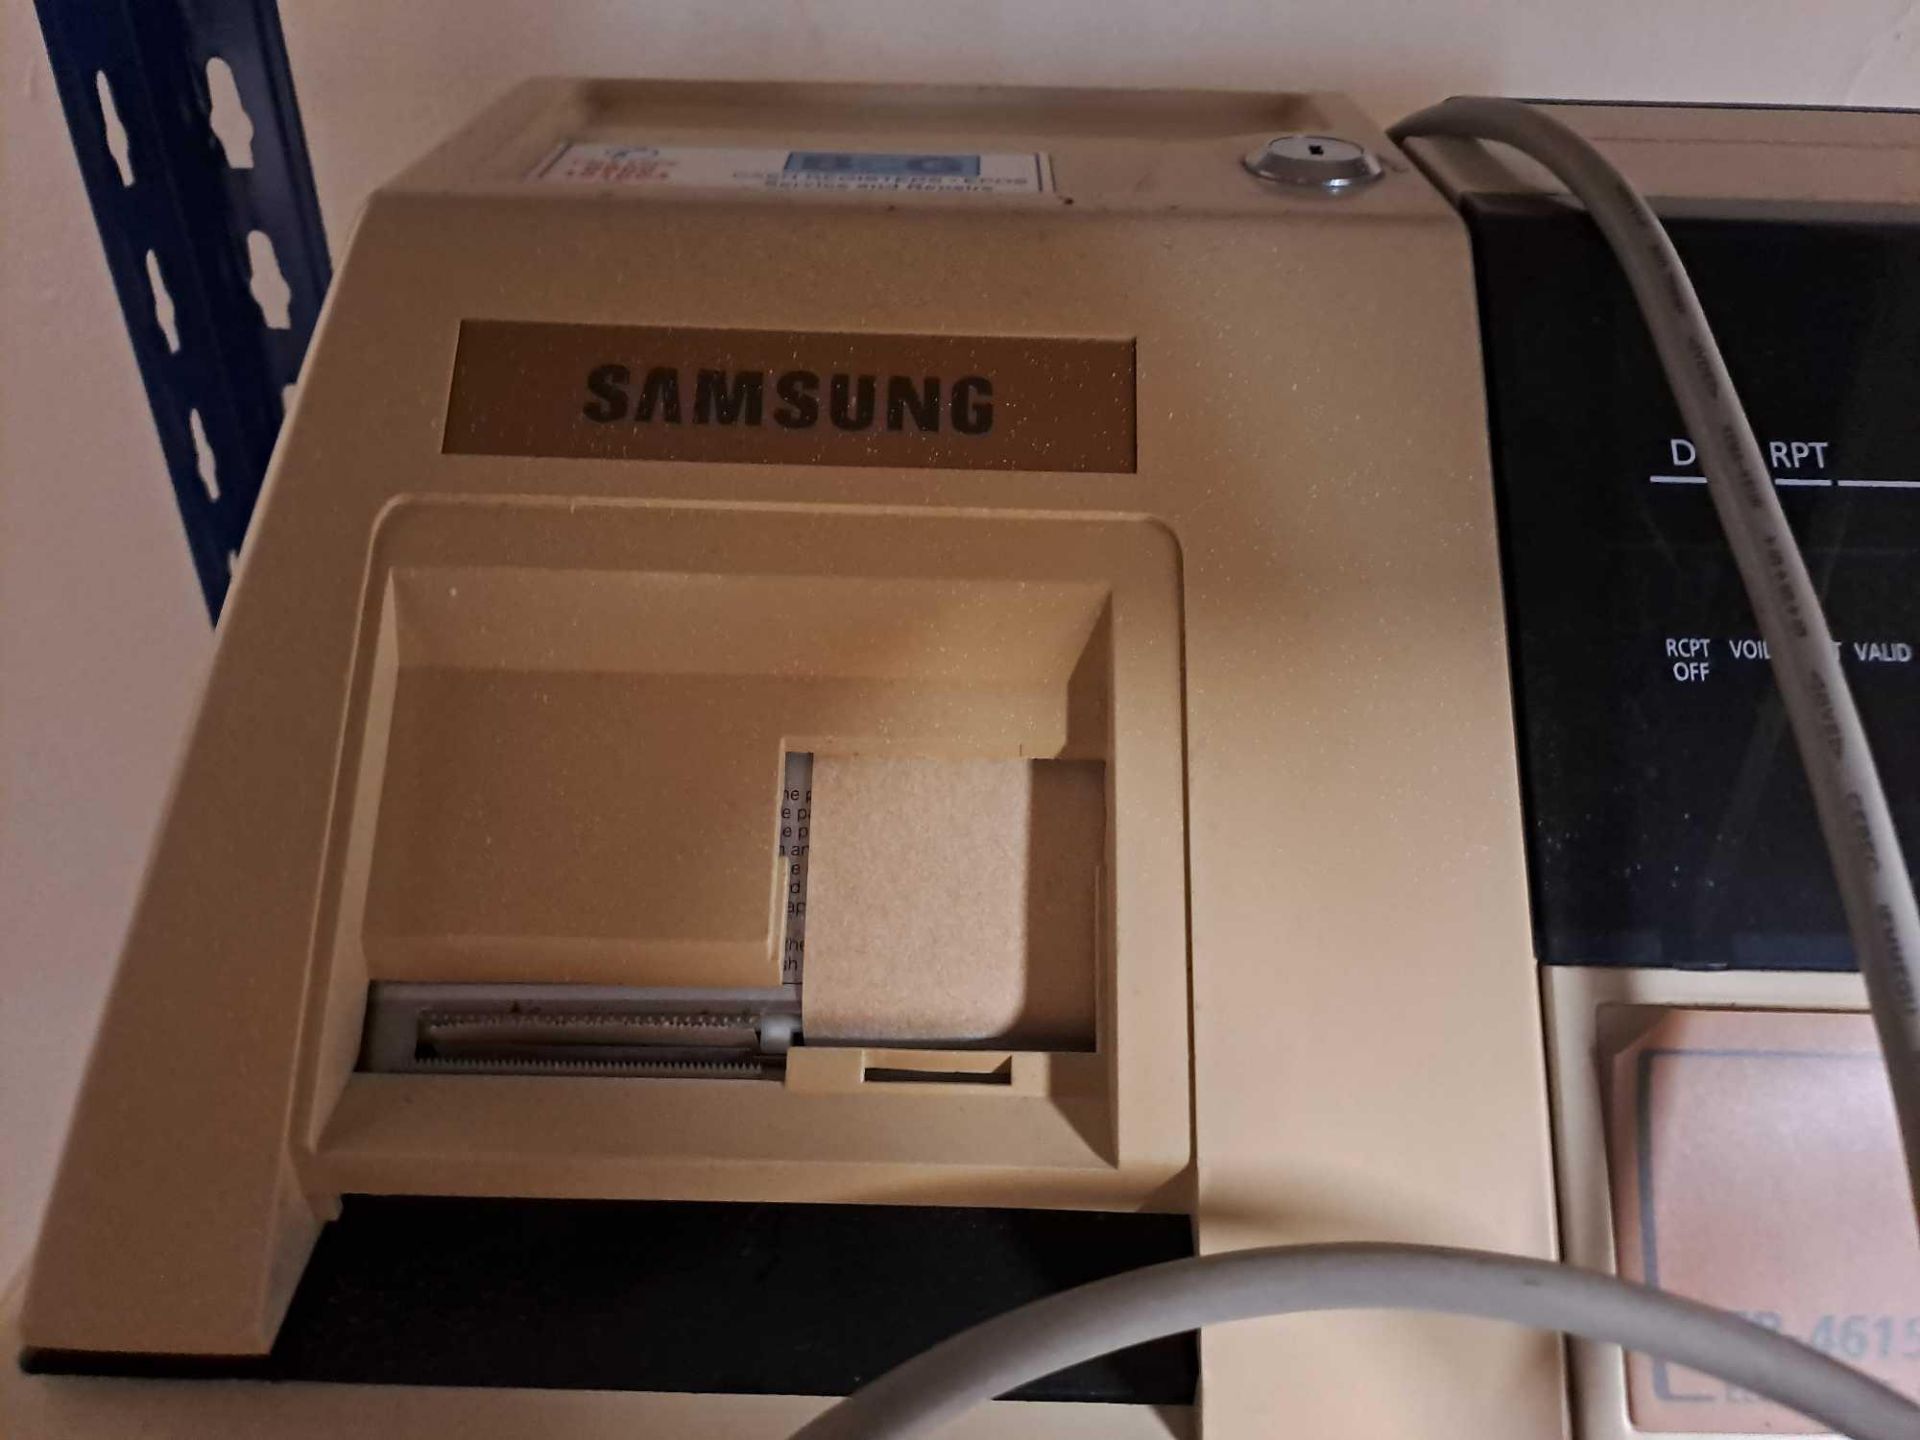 Samsung ER-4615 Cash register - Image 2 of 4